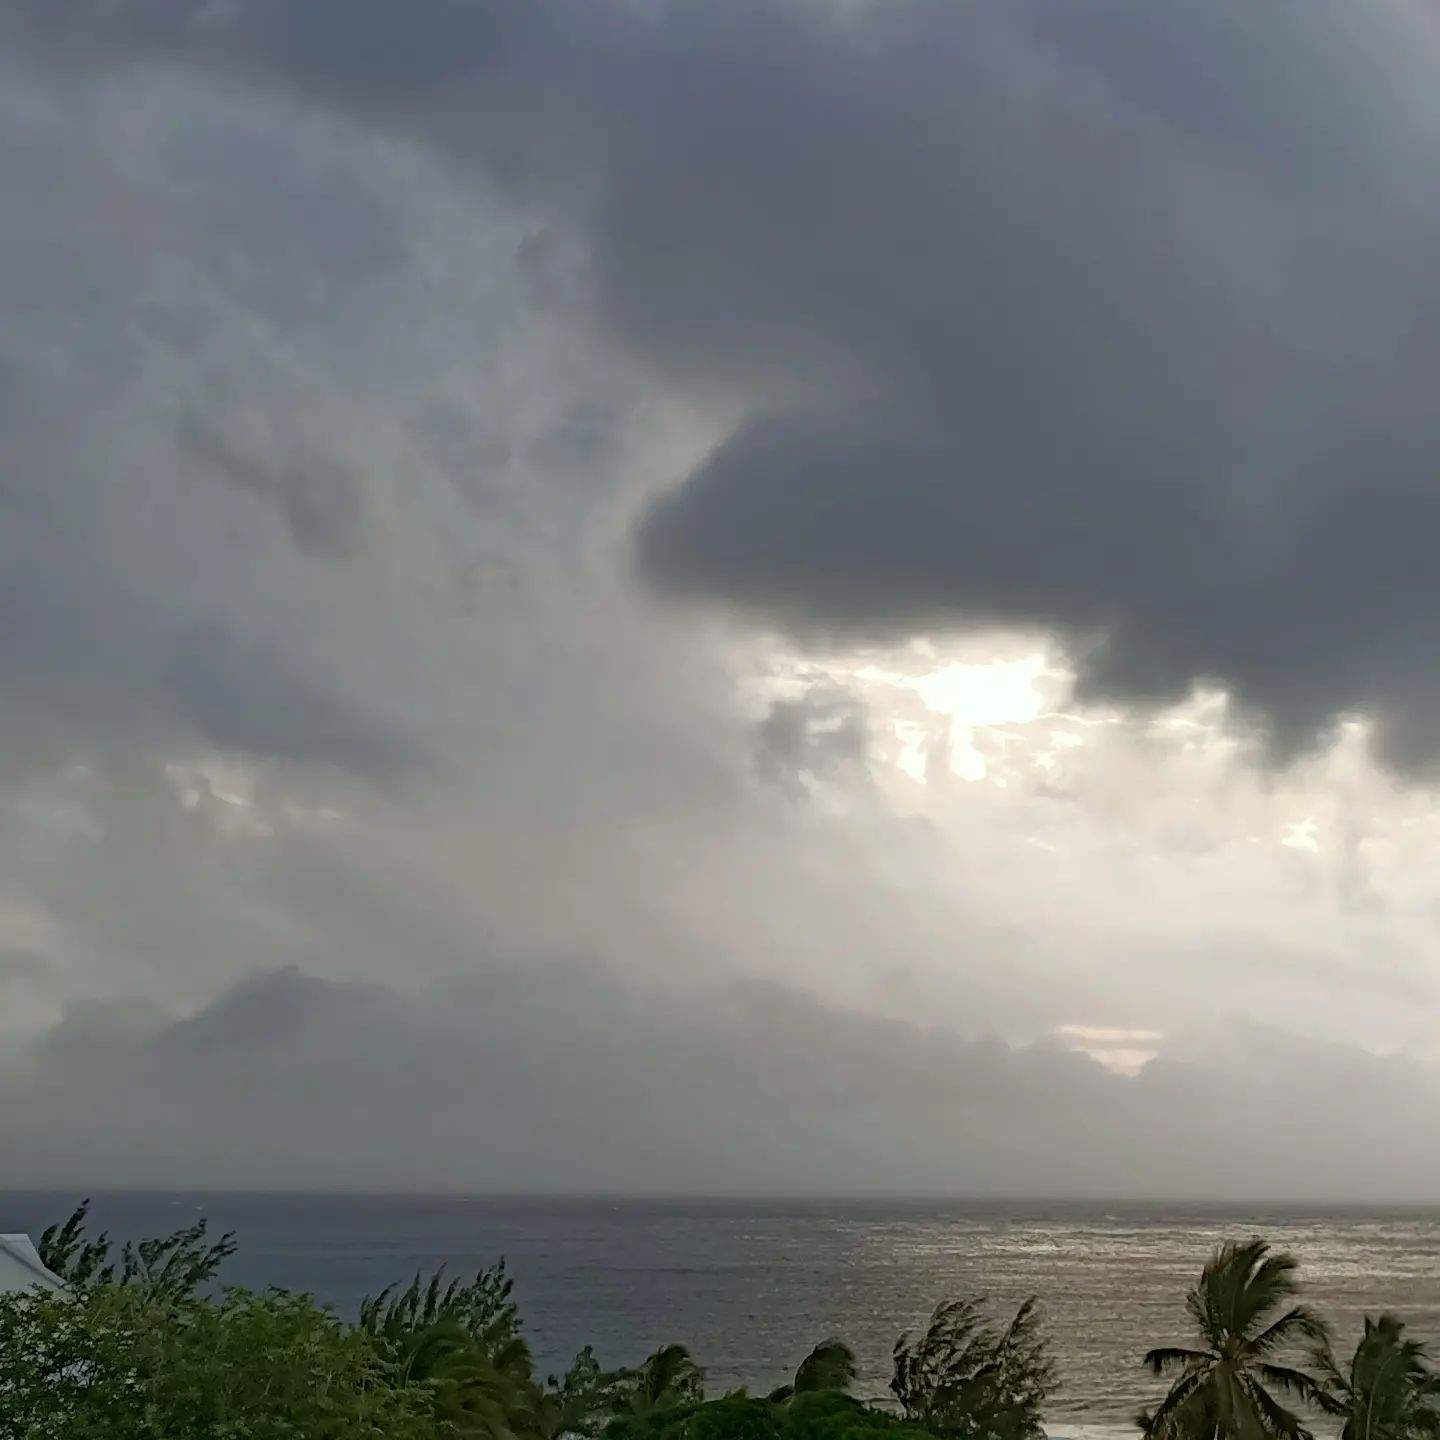 Abb. 2: Mystische Stimmung am 19. Februar 2022 auf La Réunion. Die Insel ist vom Zyklon Emnati allerdings nur am Rande betroffen. (Bild: F. Decker)